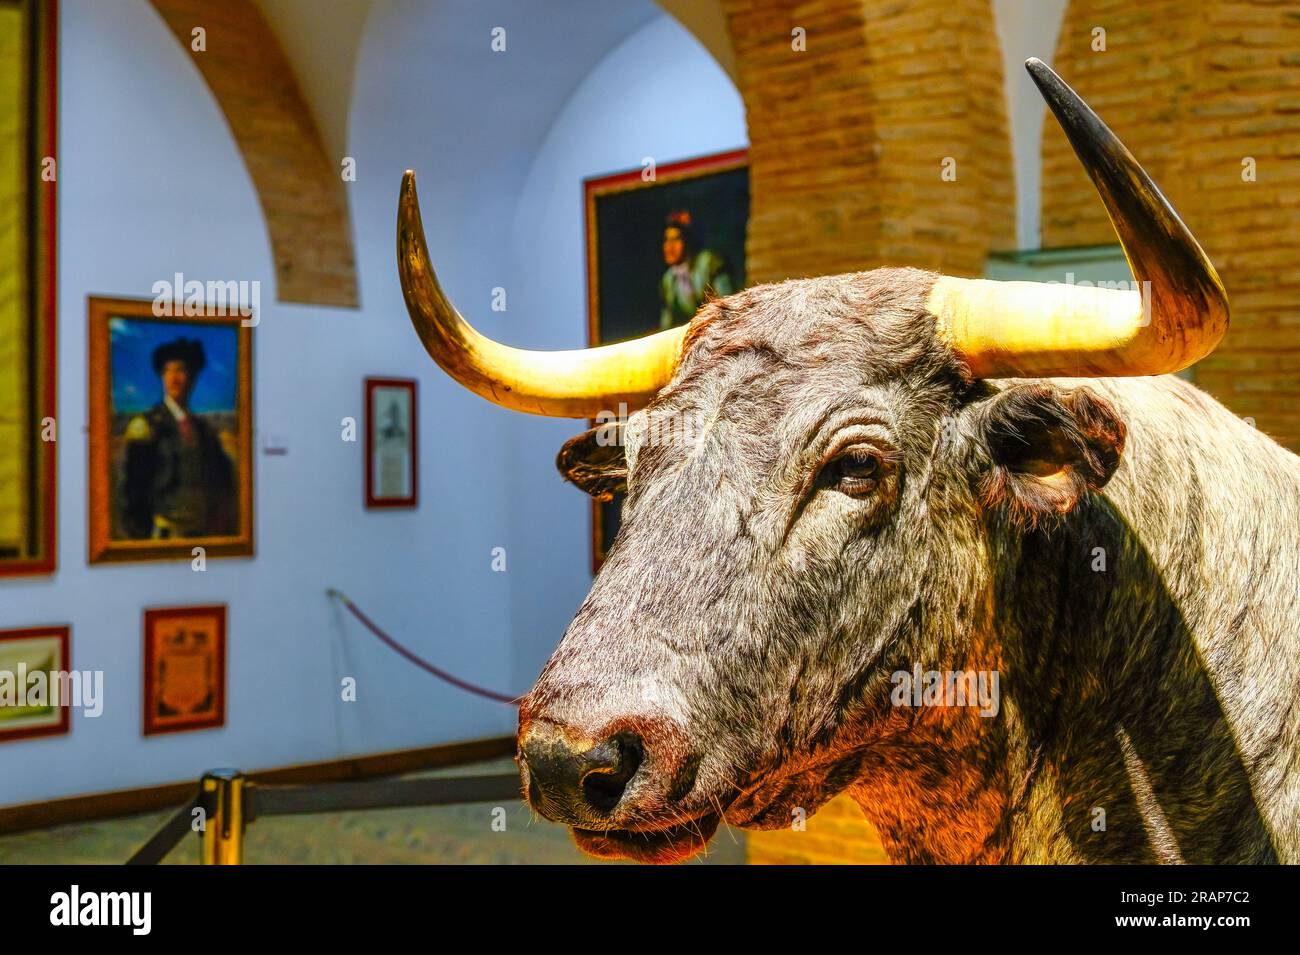 Sevilla, Spanien - 20. Januar 2023: Stierkultur im Stierkampfarena-Gebäude Royal Maestranza of Cavalry. Die Tierstatue ist mit langen Hörnern versehen. Stockfoto